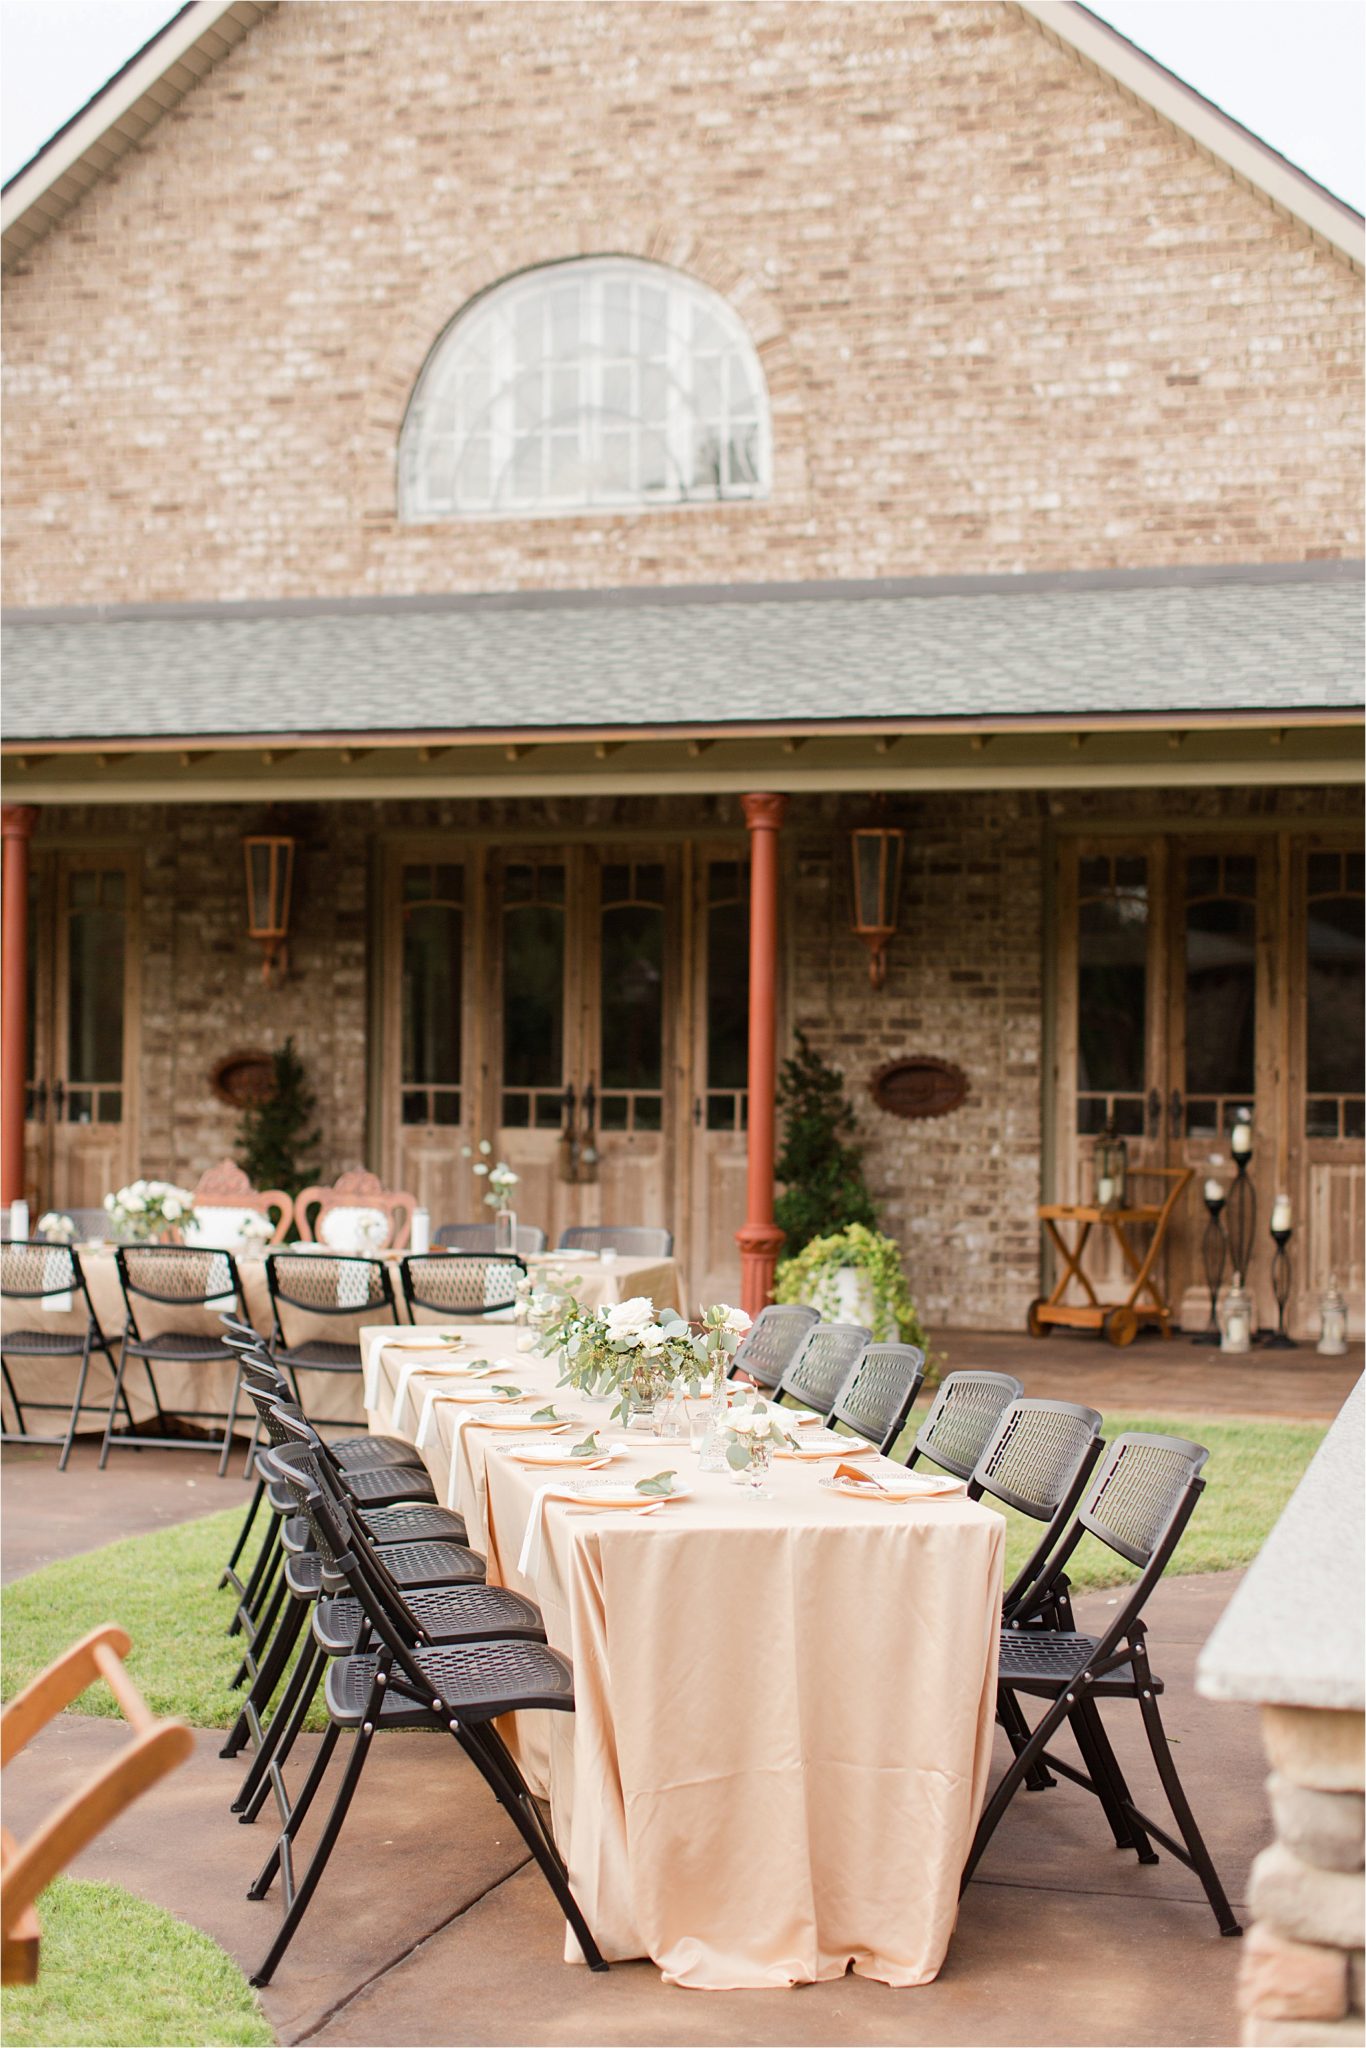 Alabama-wedding-locations-bella-sera-gardens-reception-venues